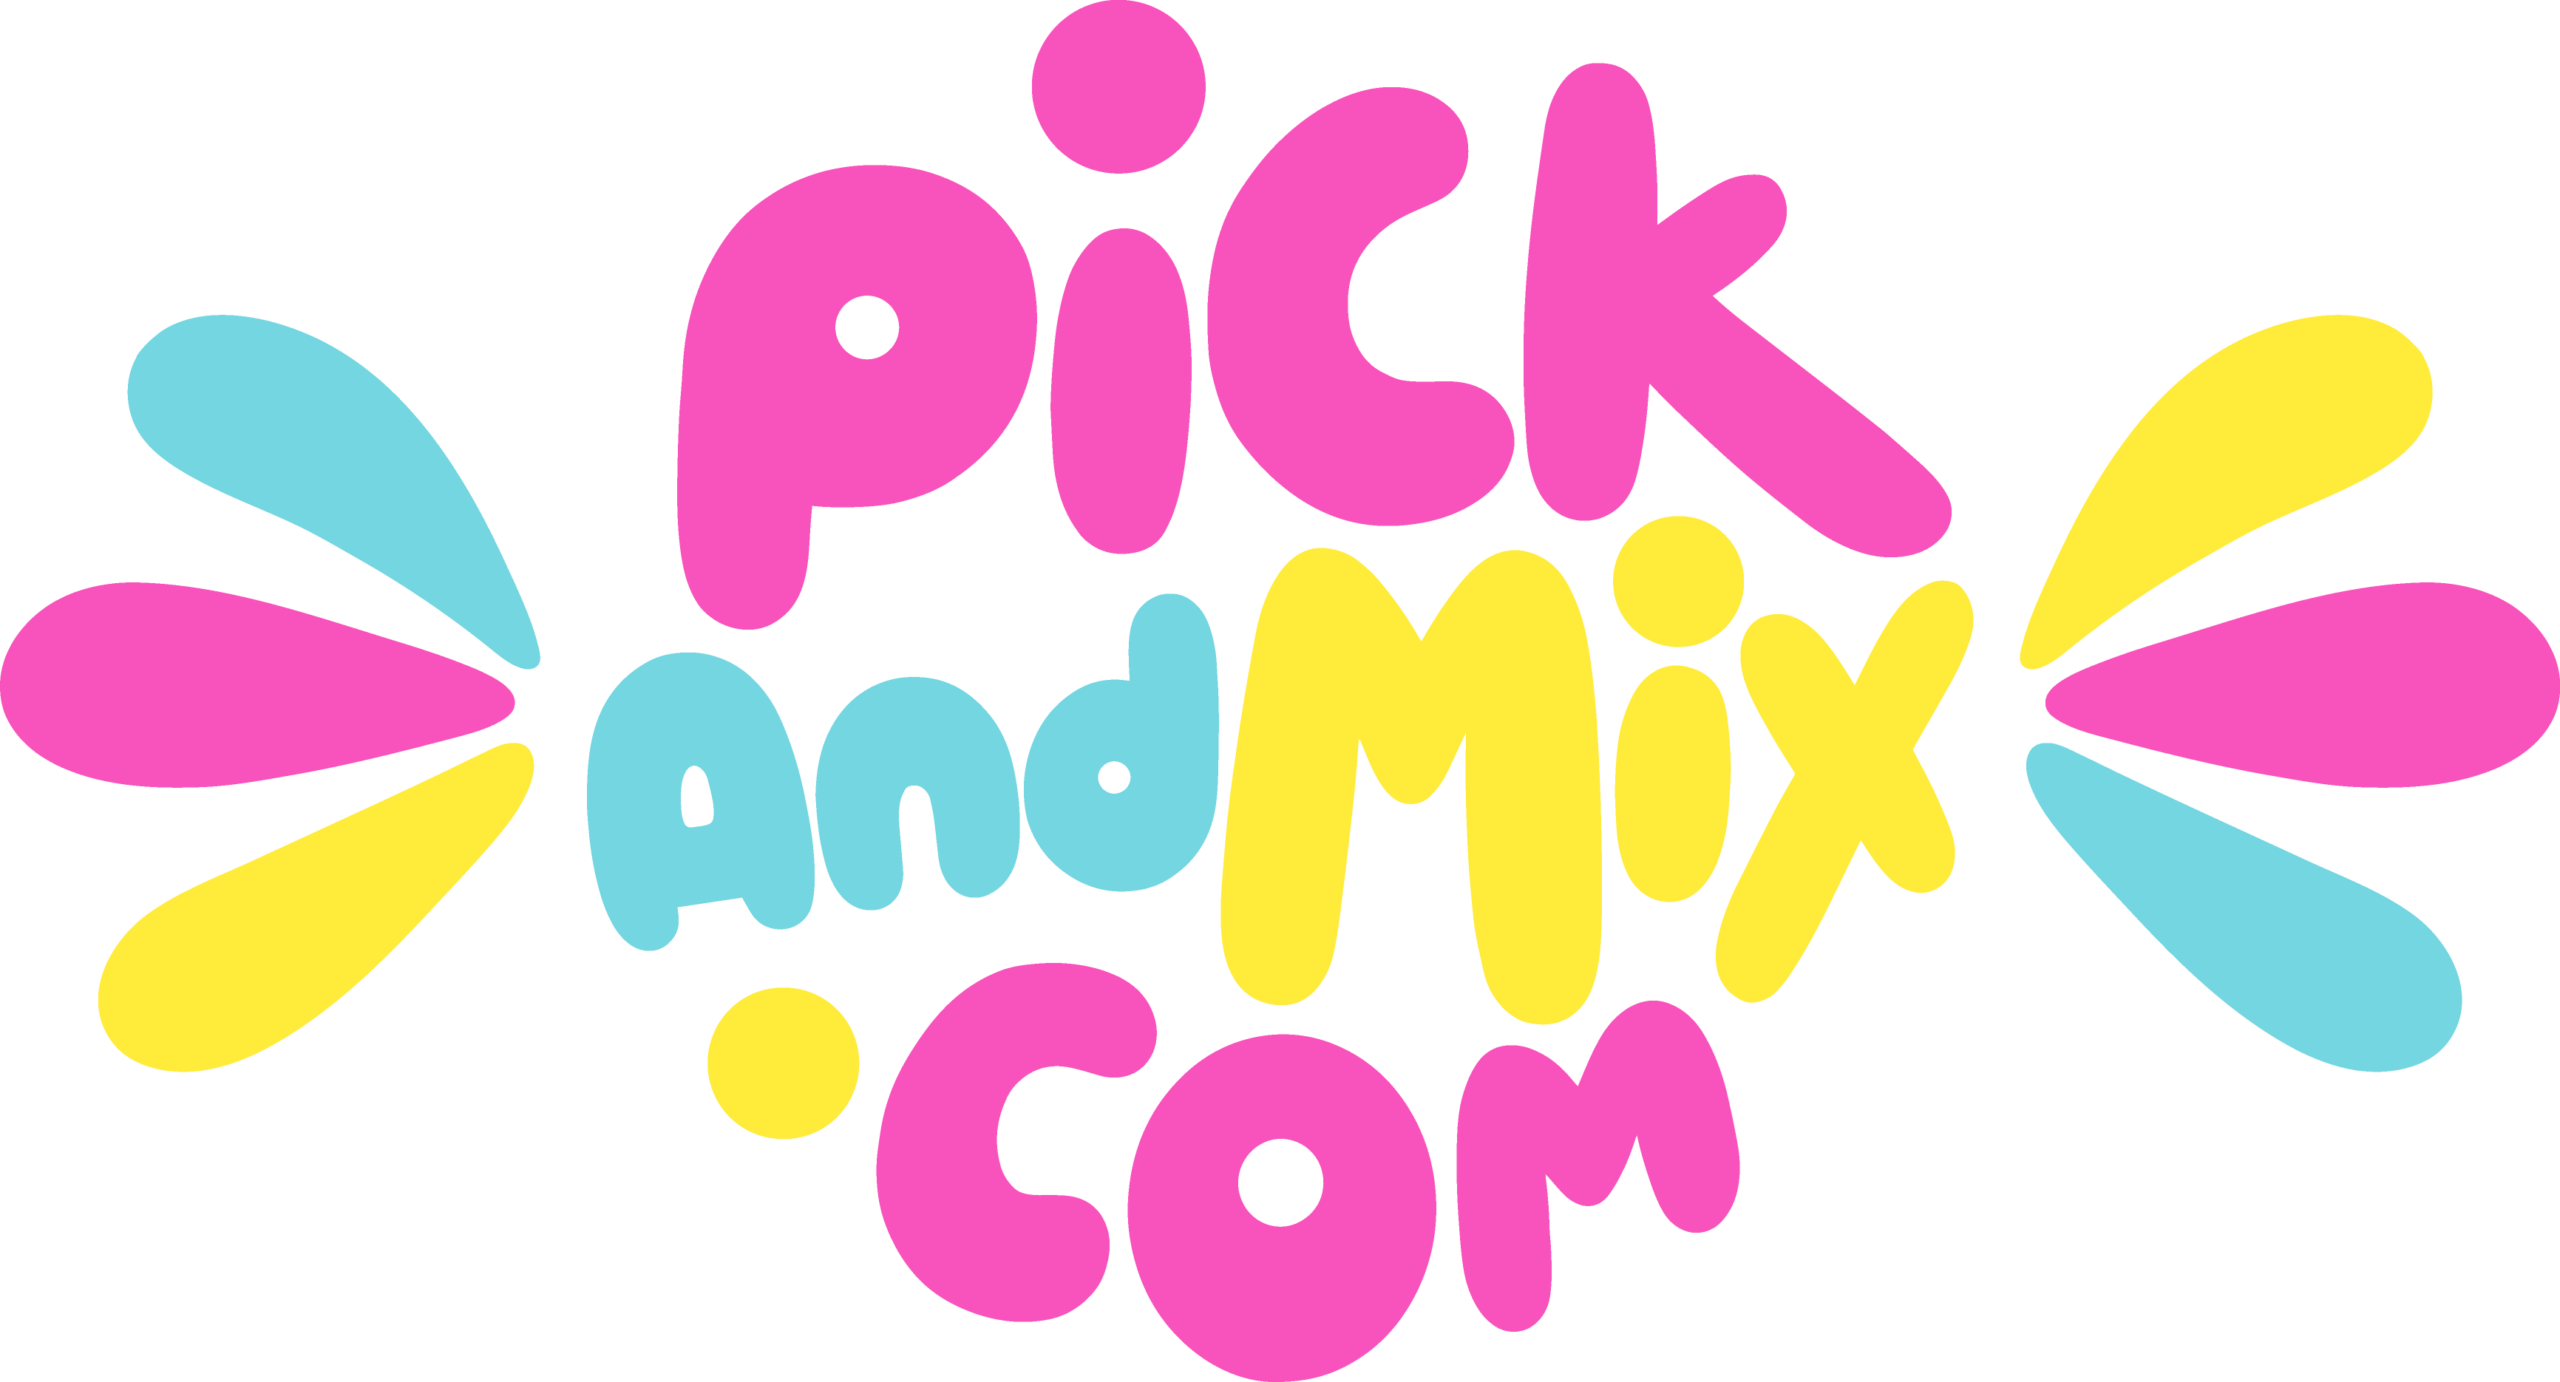 Pick n Mix